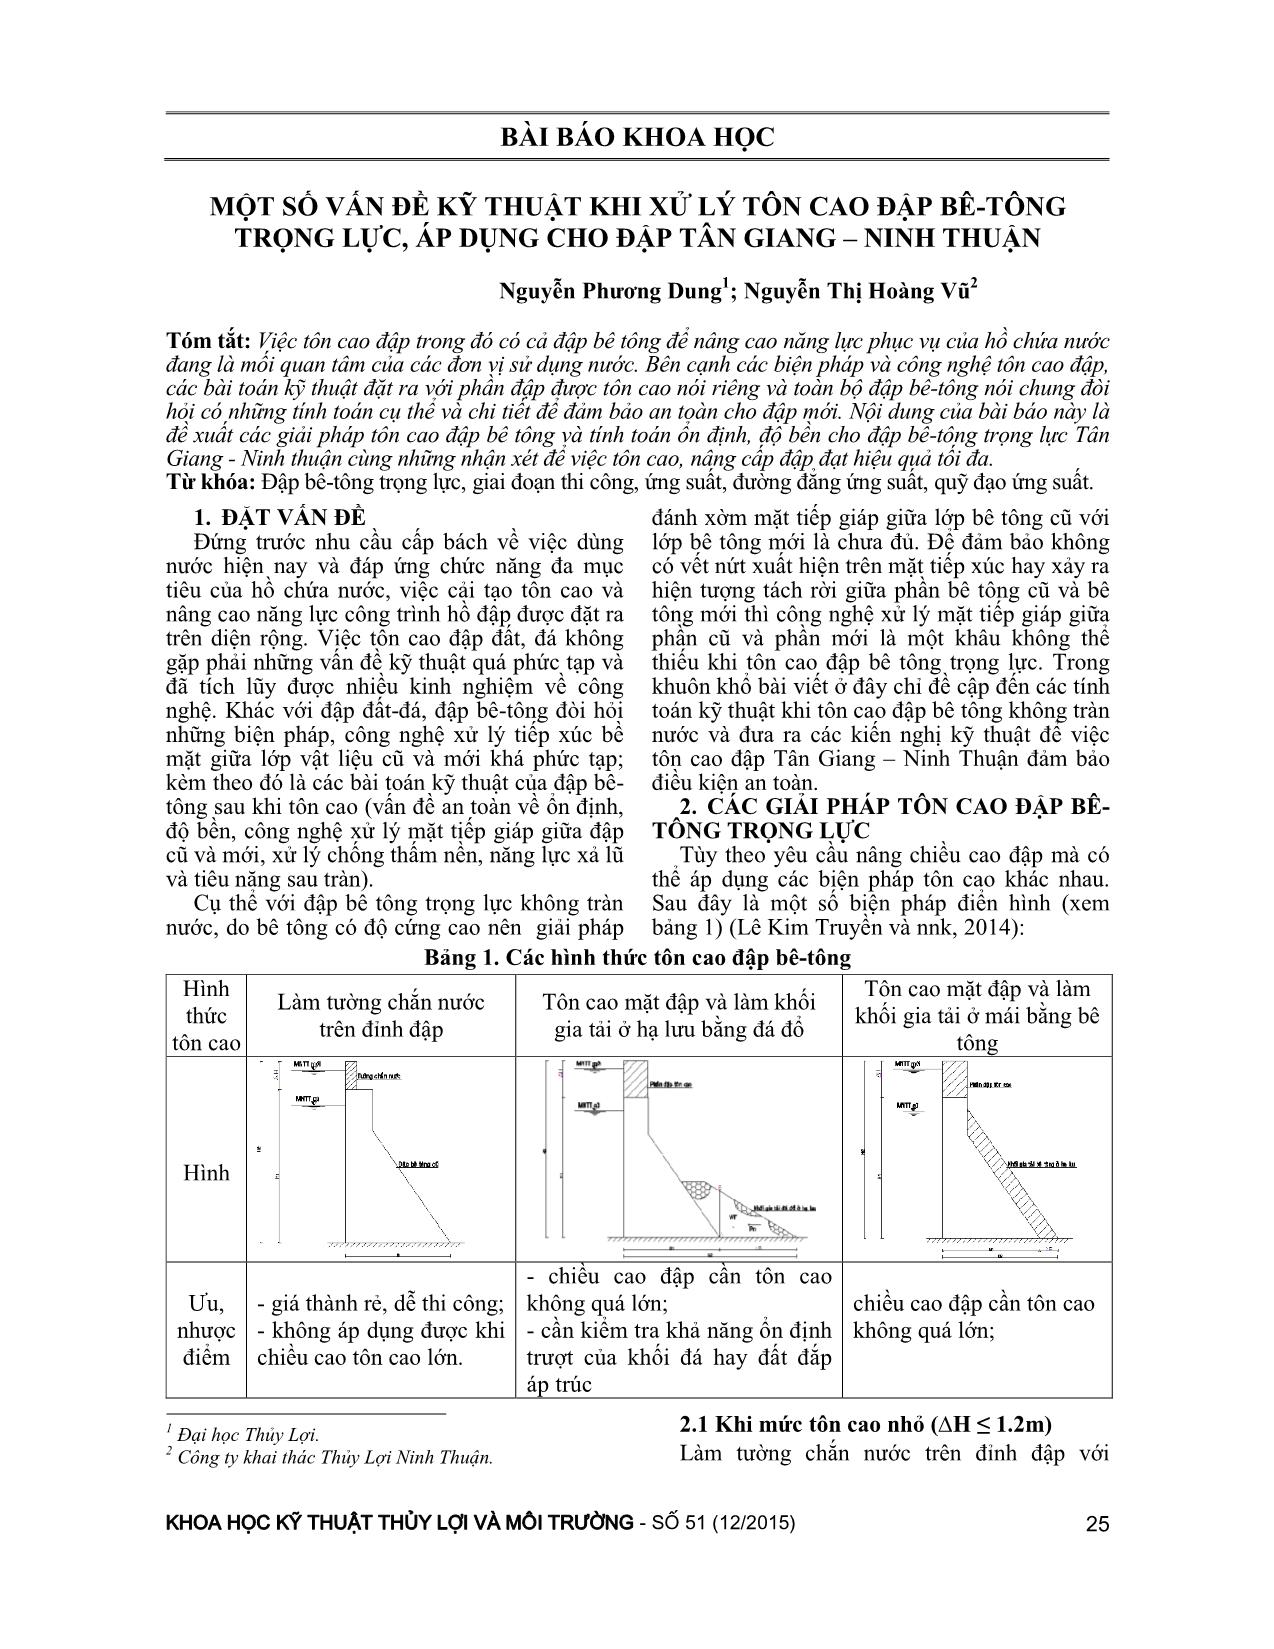 Một số vấn đề kỹ thuật khi xử lý tôn cao đập bê-tông trọng lực, áp dụng cho đập Tân Giang – Ninh Thuận trang 1